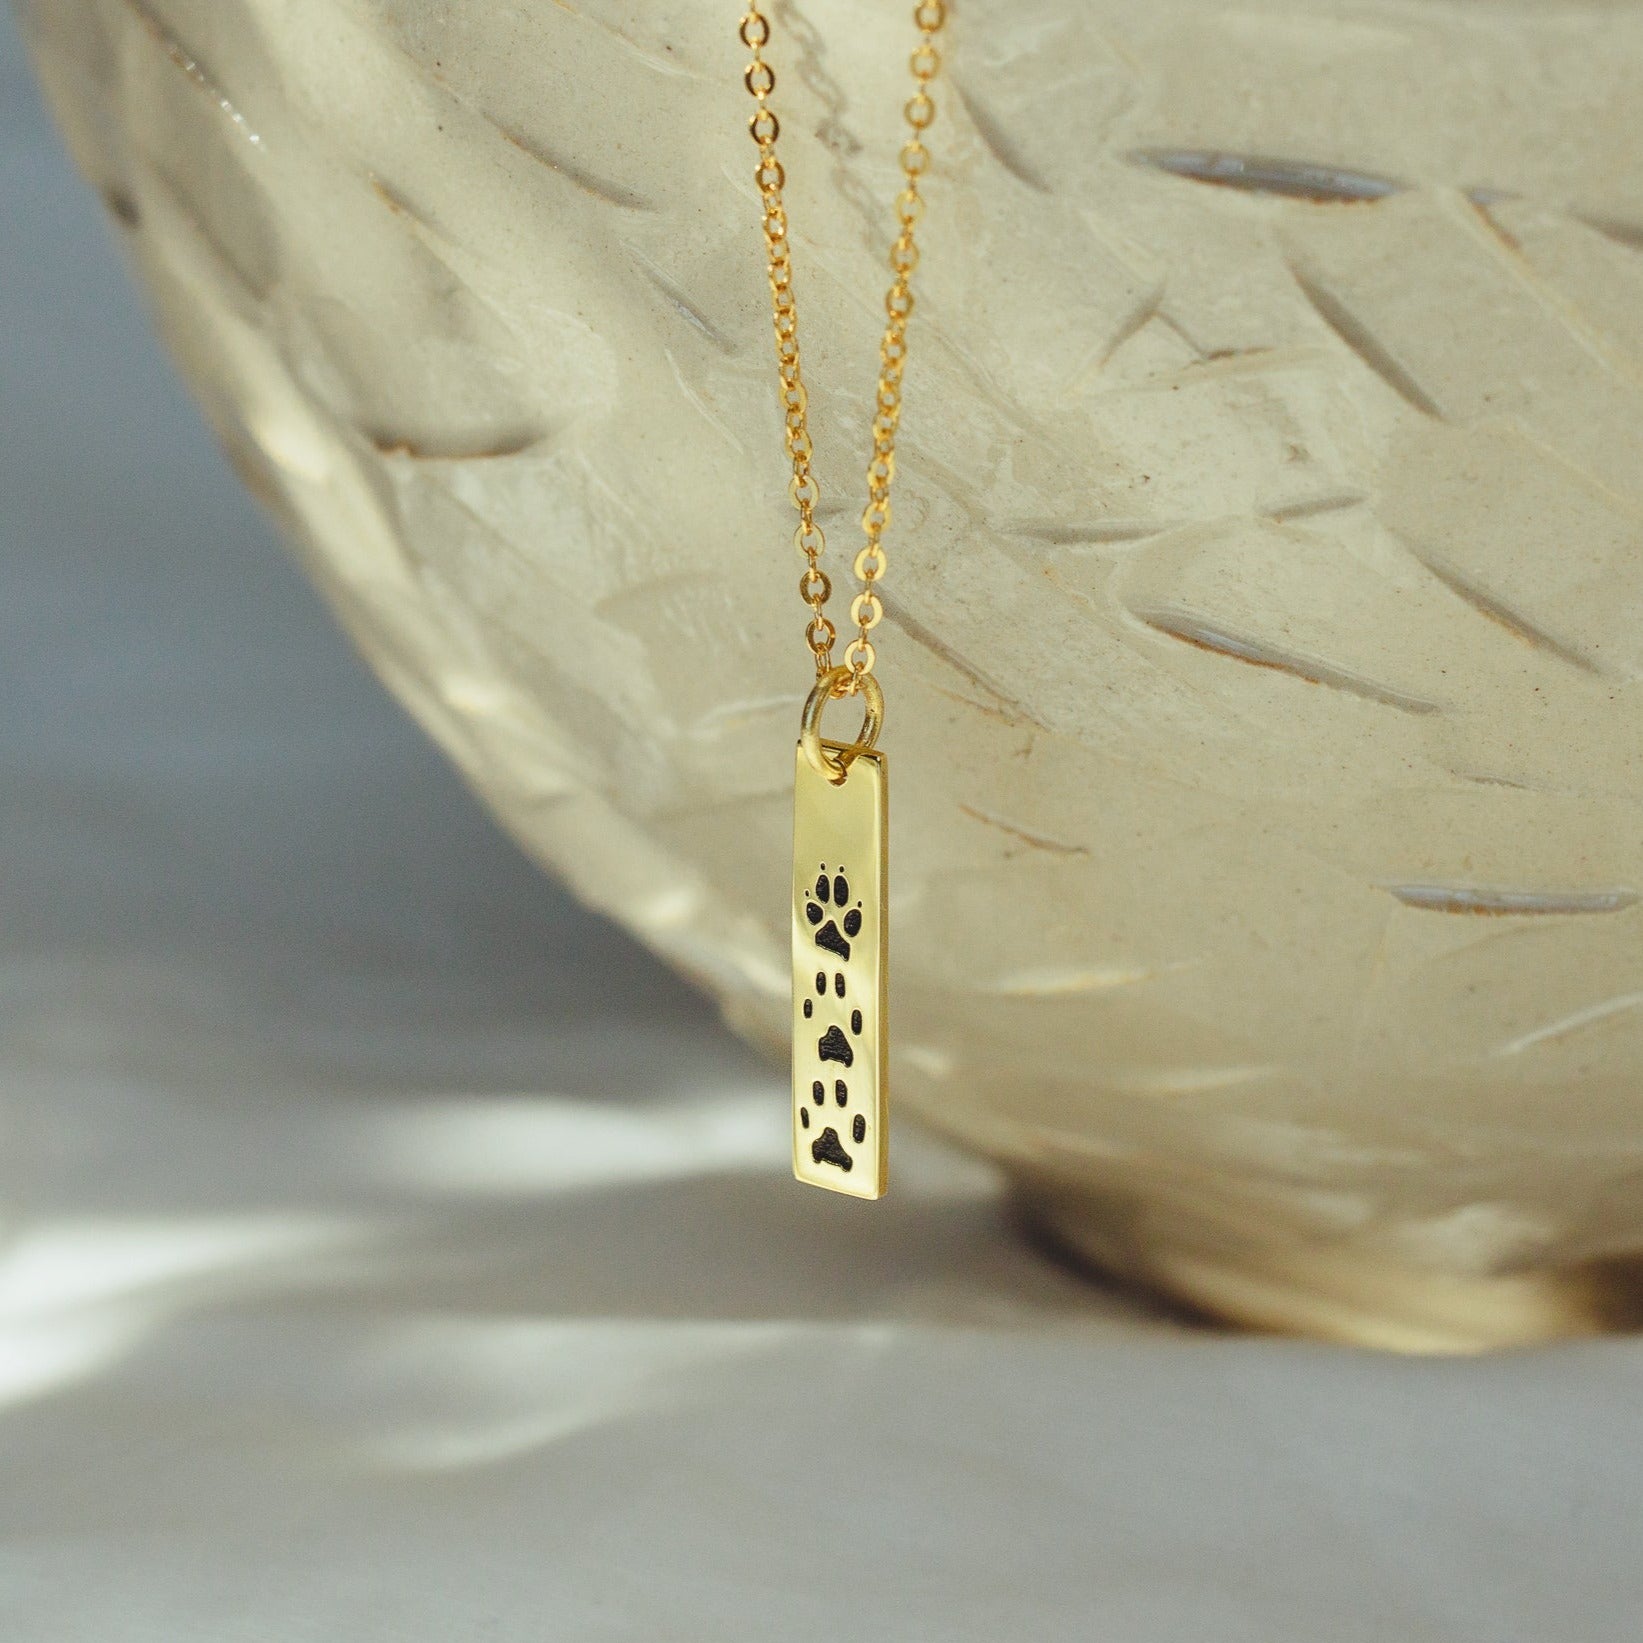 Pillar Bar Necklace - 18k Gold Vermeil